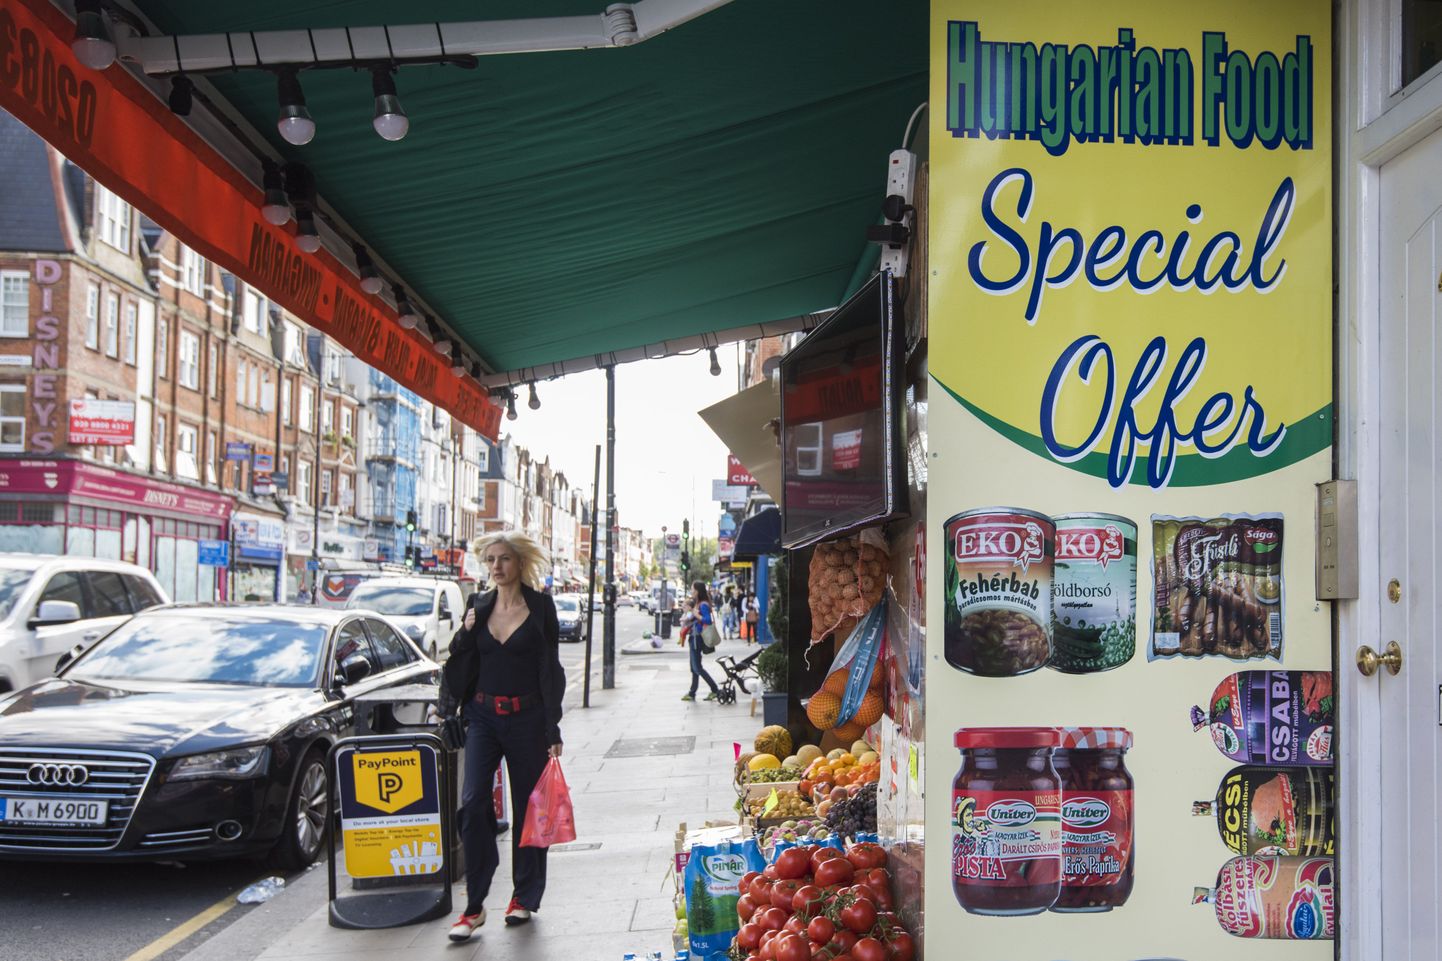 Ungari toidupood Londonis.